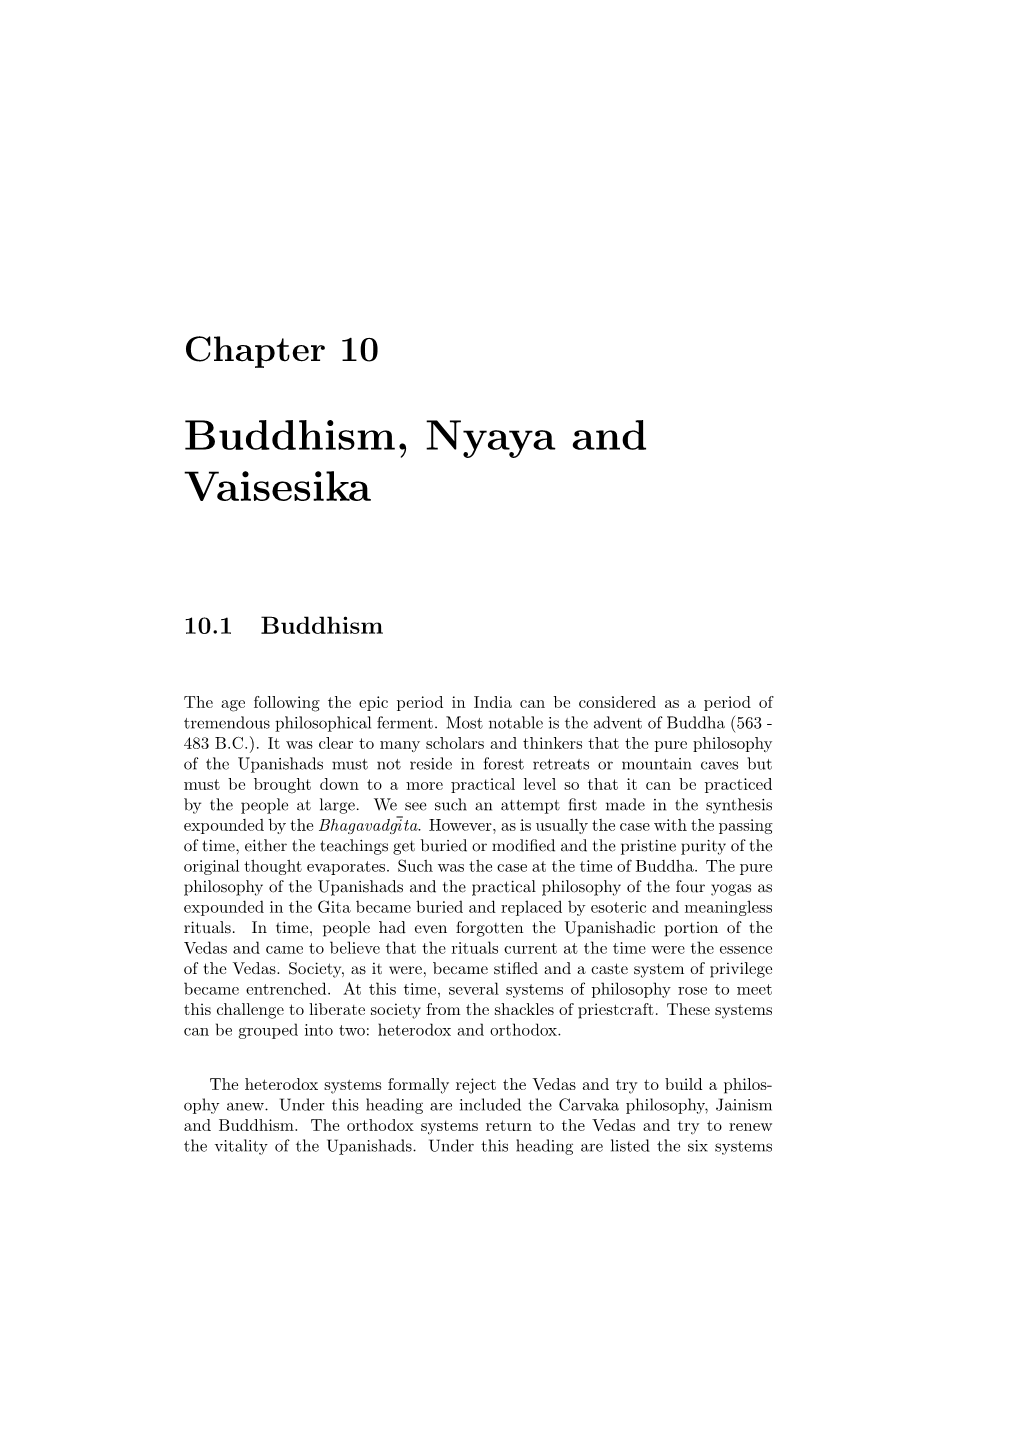 Buddhism, Nyaya and Vaisesika